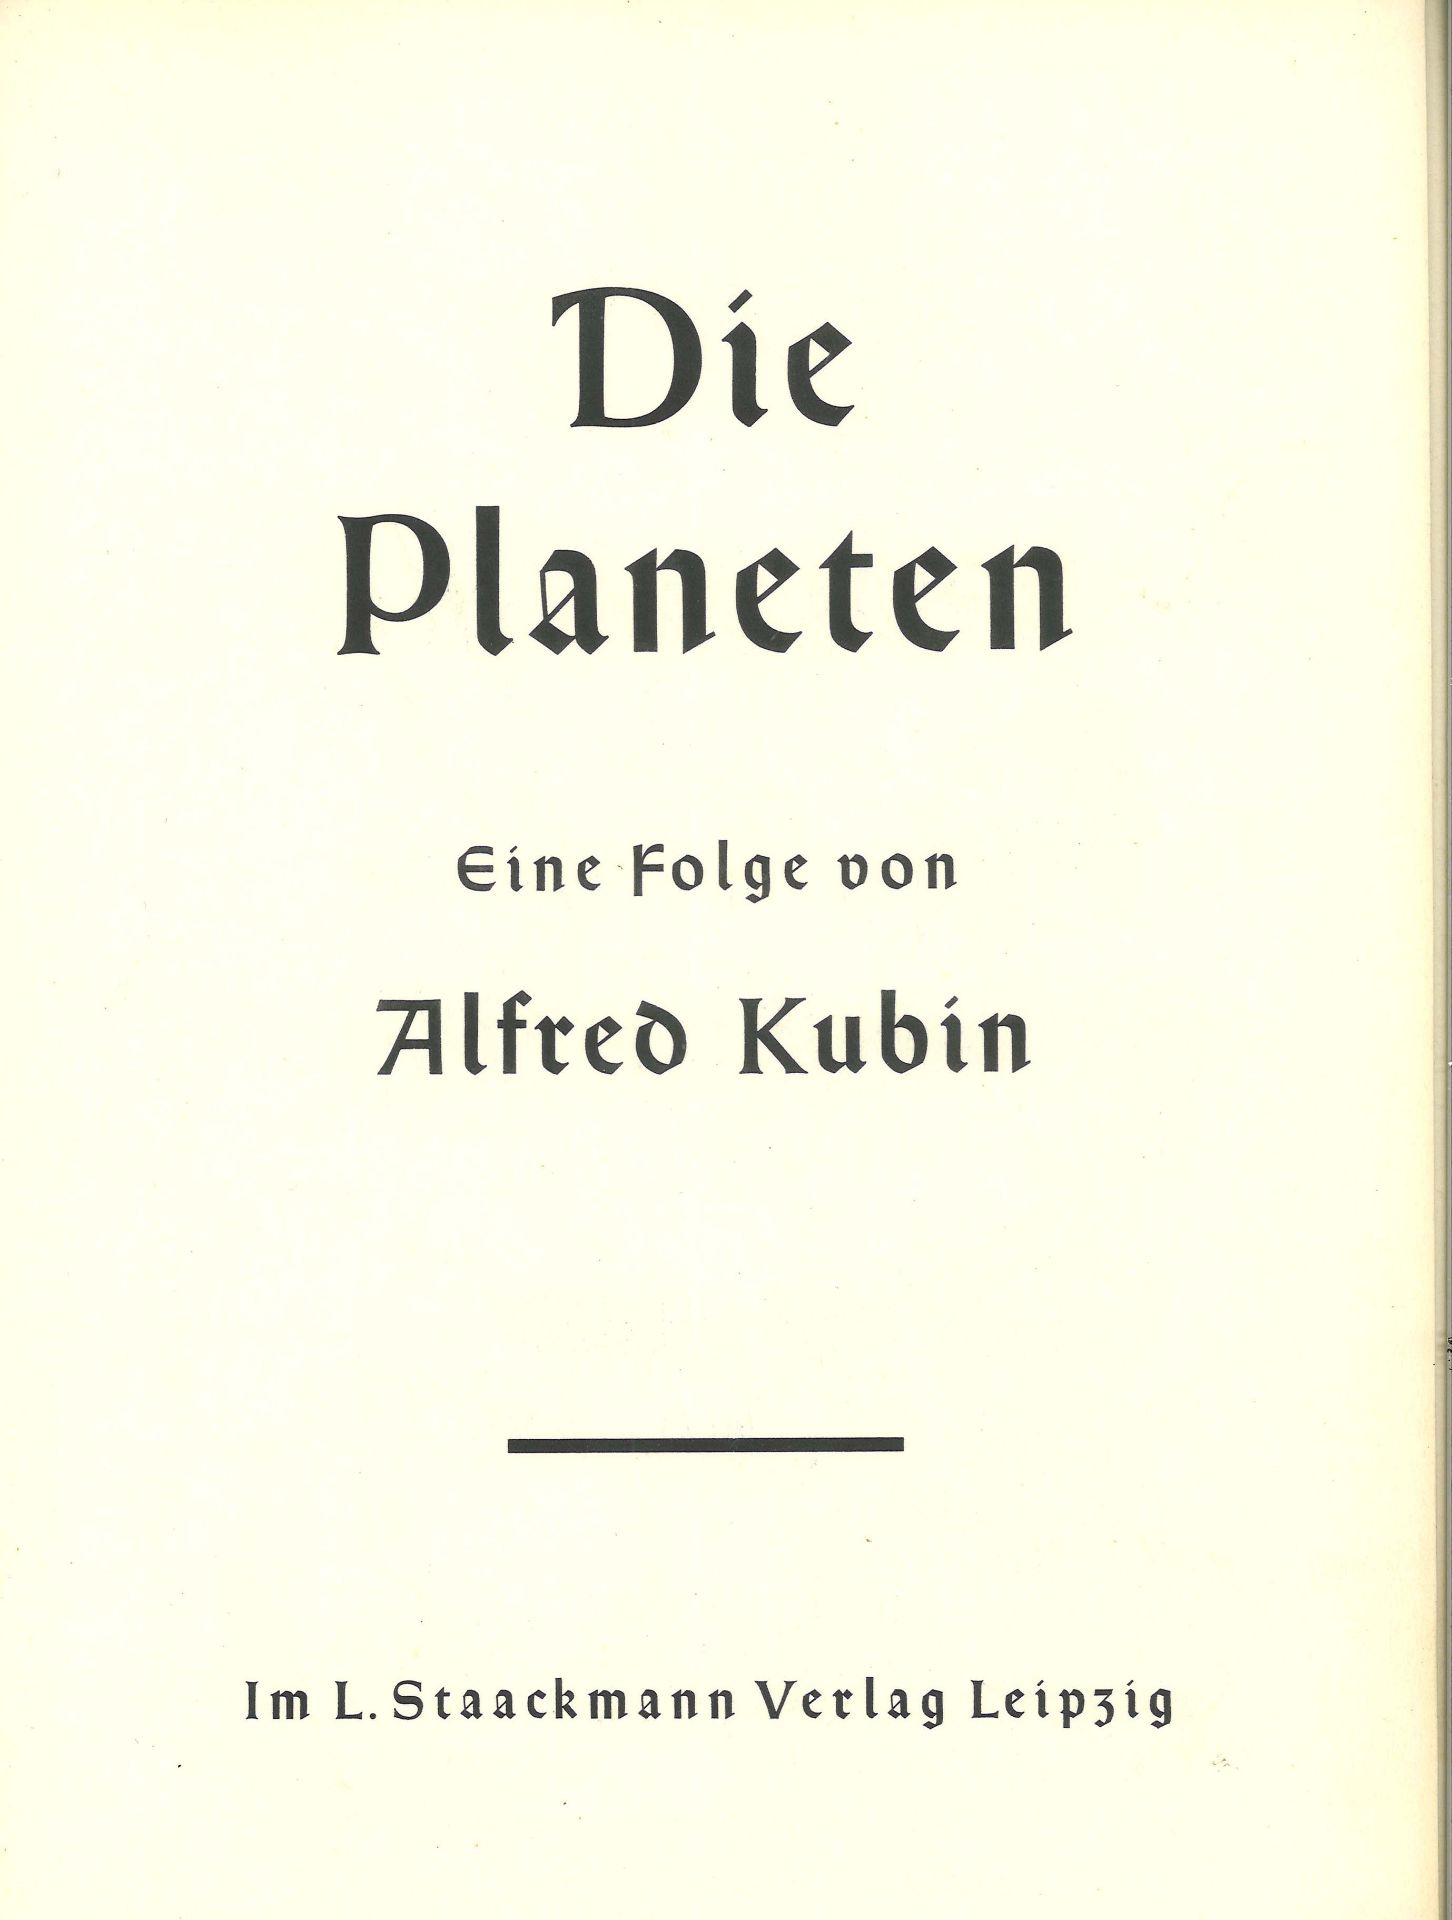 Alfred Kubin, "Die Planeten" Eine Folge - Bild 2 aus 4